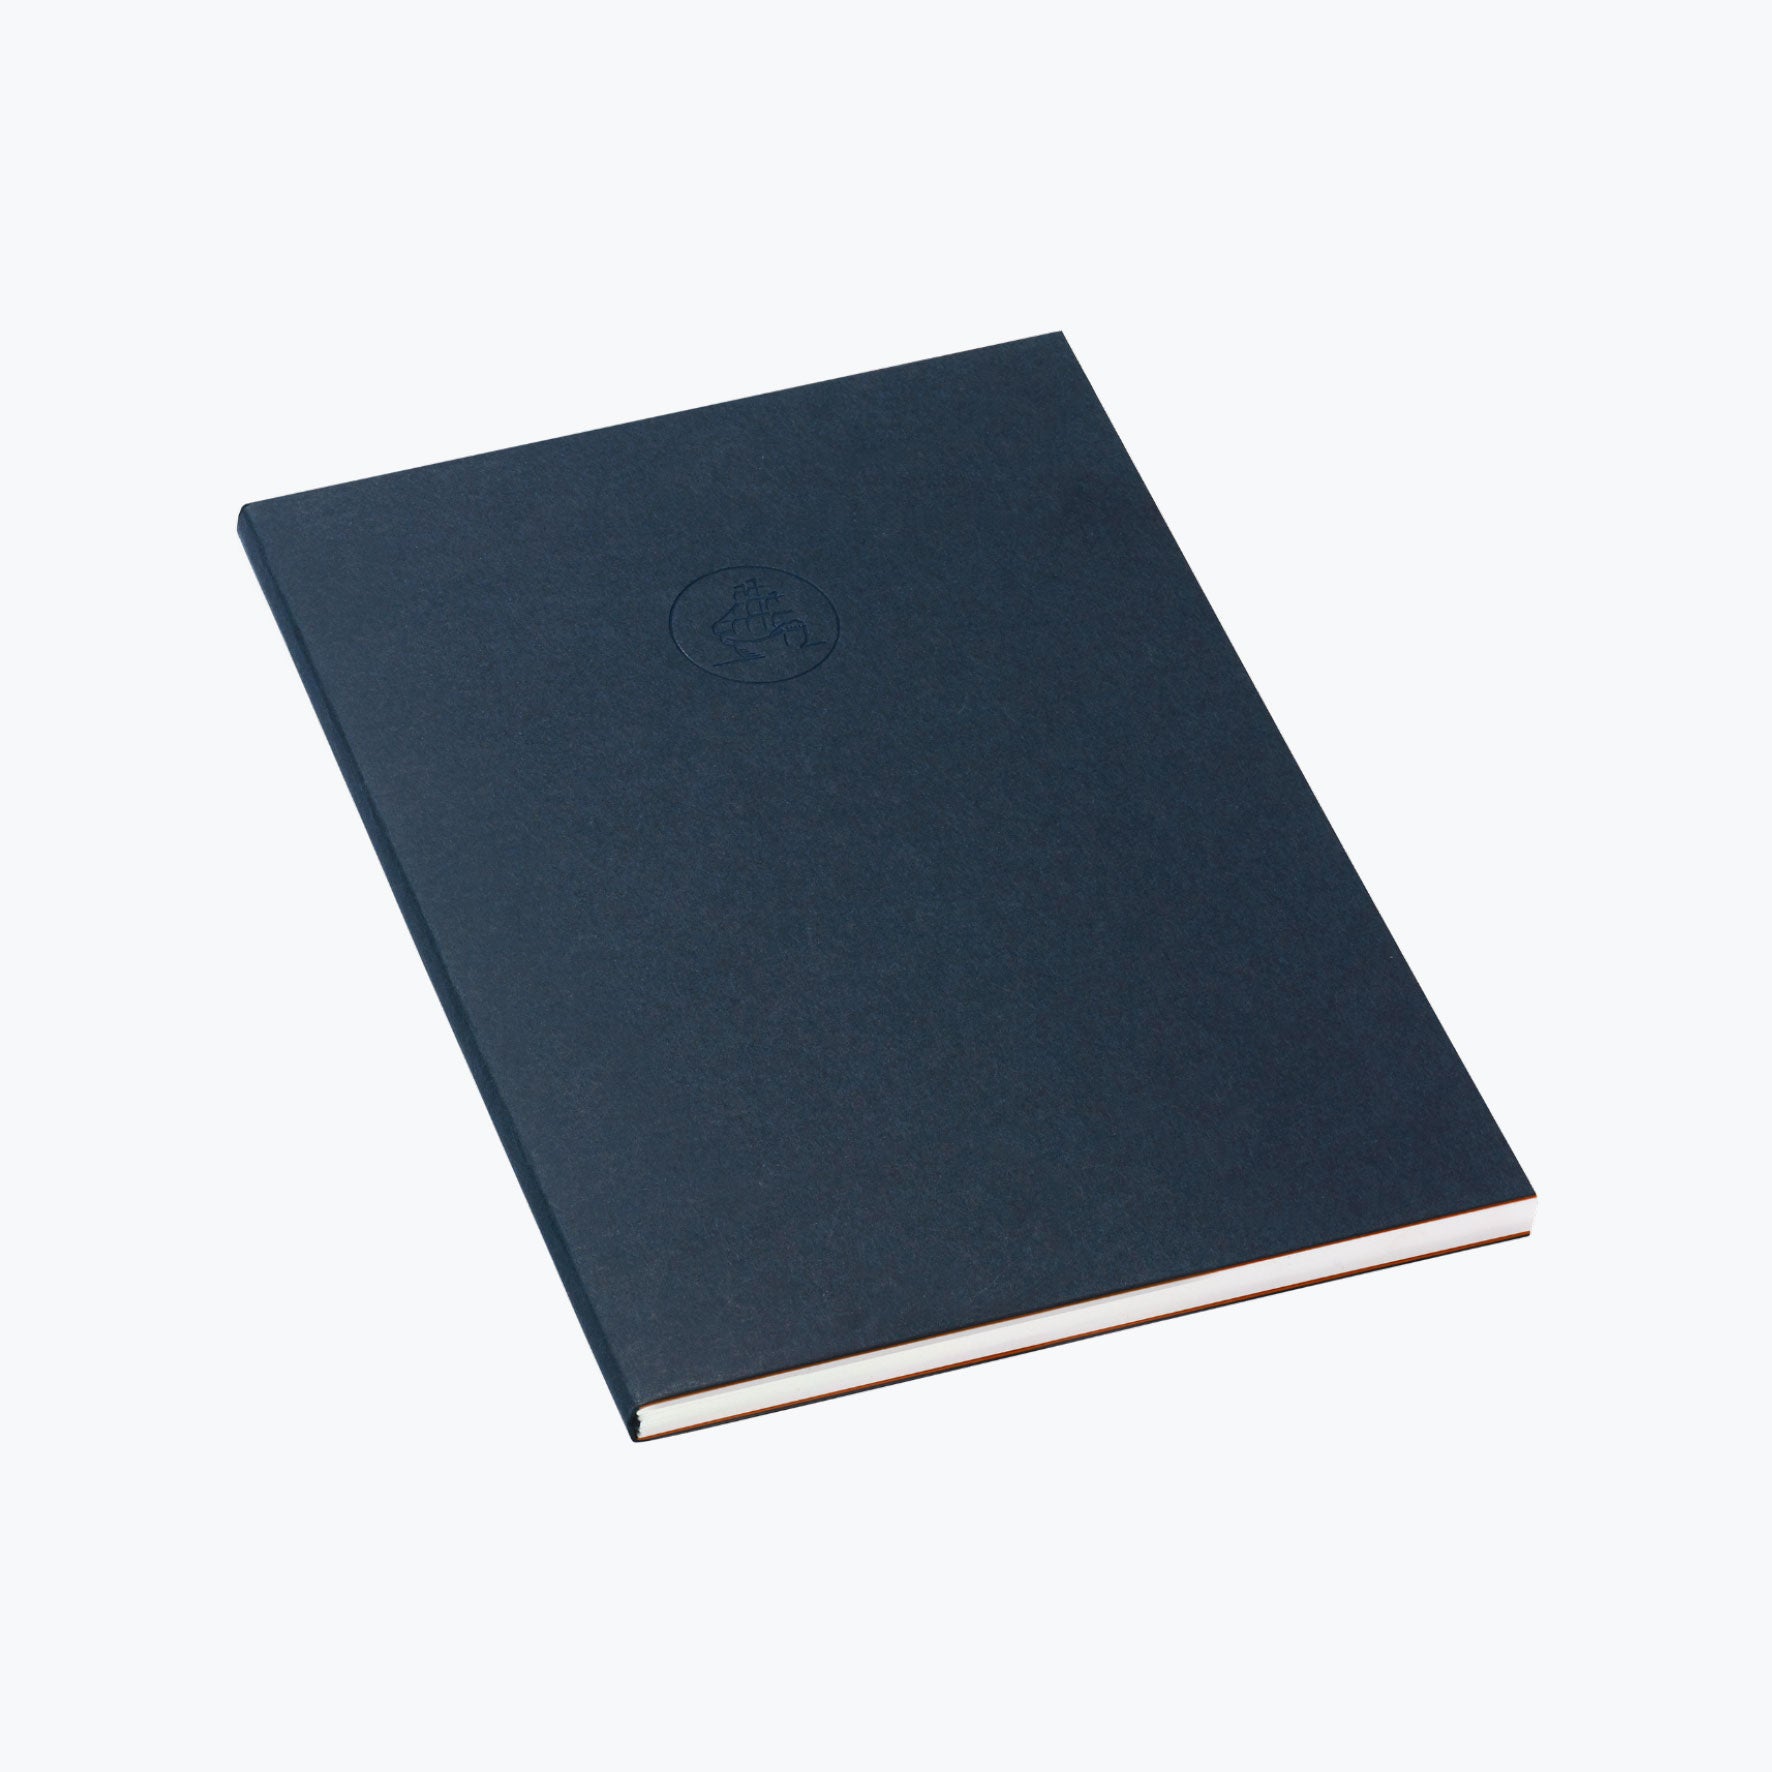 J. Herbin - Notebook - Refill - A5 - Artist’s Notebook